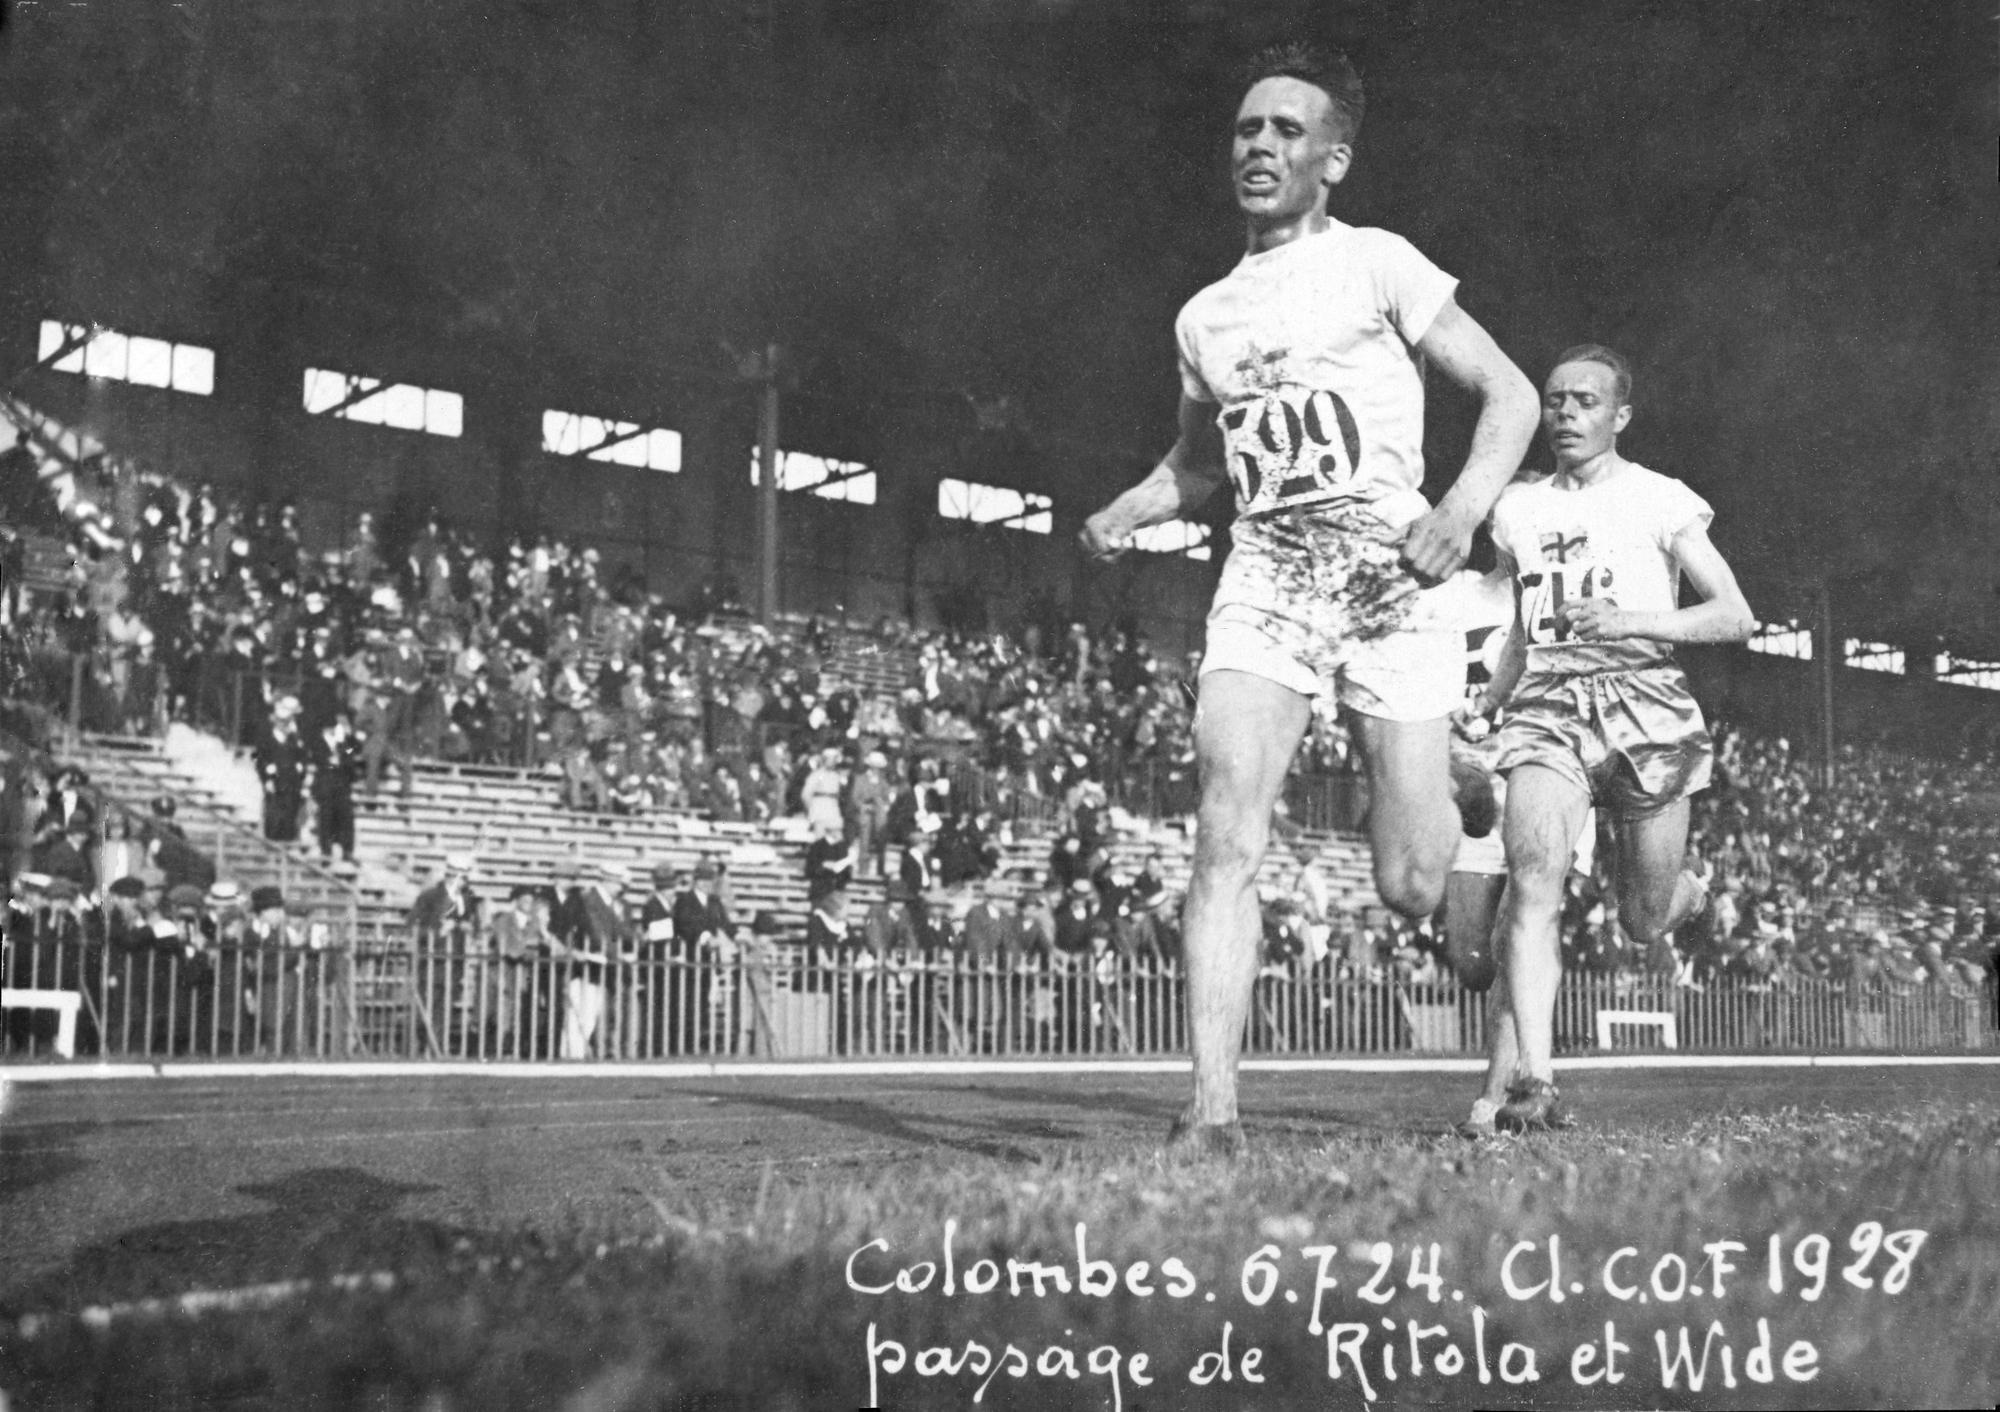 Ville Ritola a vécu des Jeux olympiques 1924 extraordinaires. [CNOSF via AFP - ARCHIVES CNOSF]